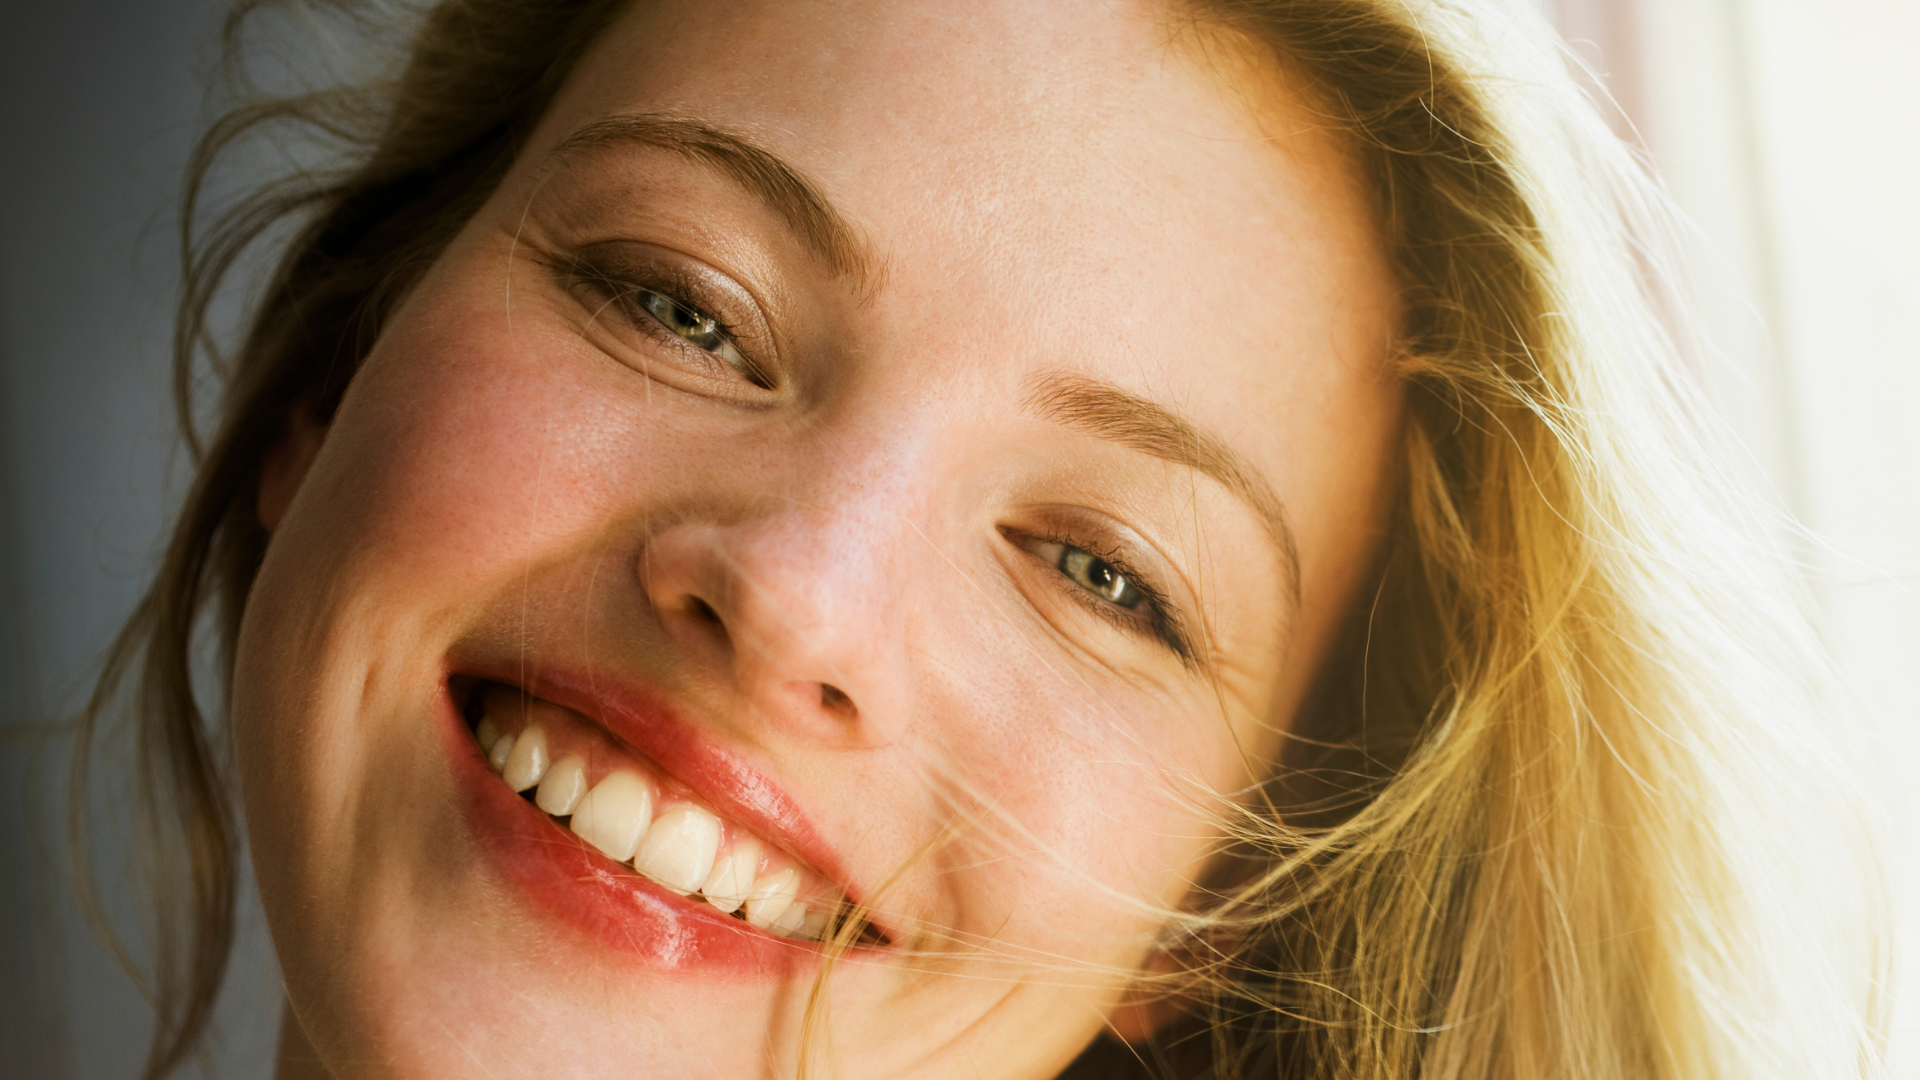 Ciencia confirma que las chicas que sonríen y huelen rico son muy atractivas